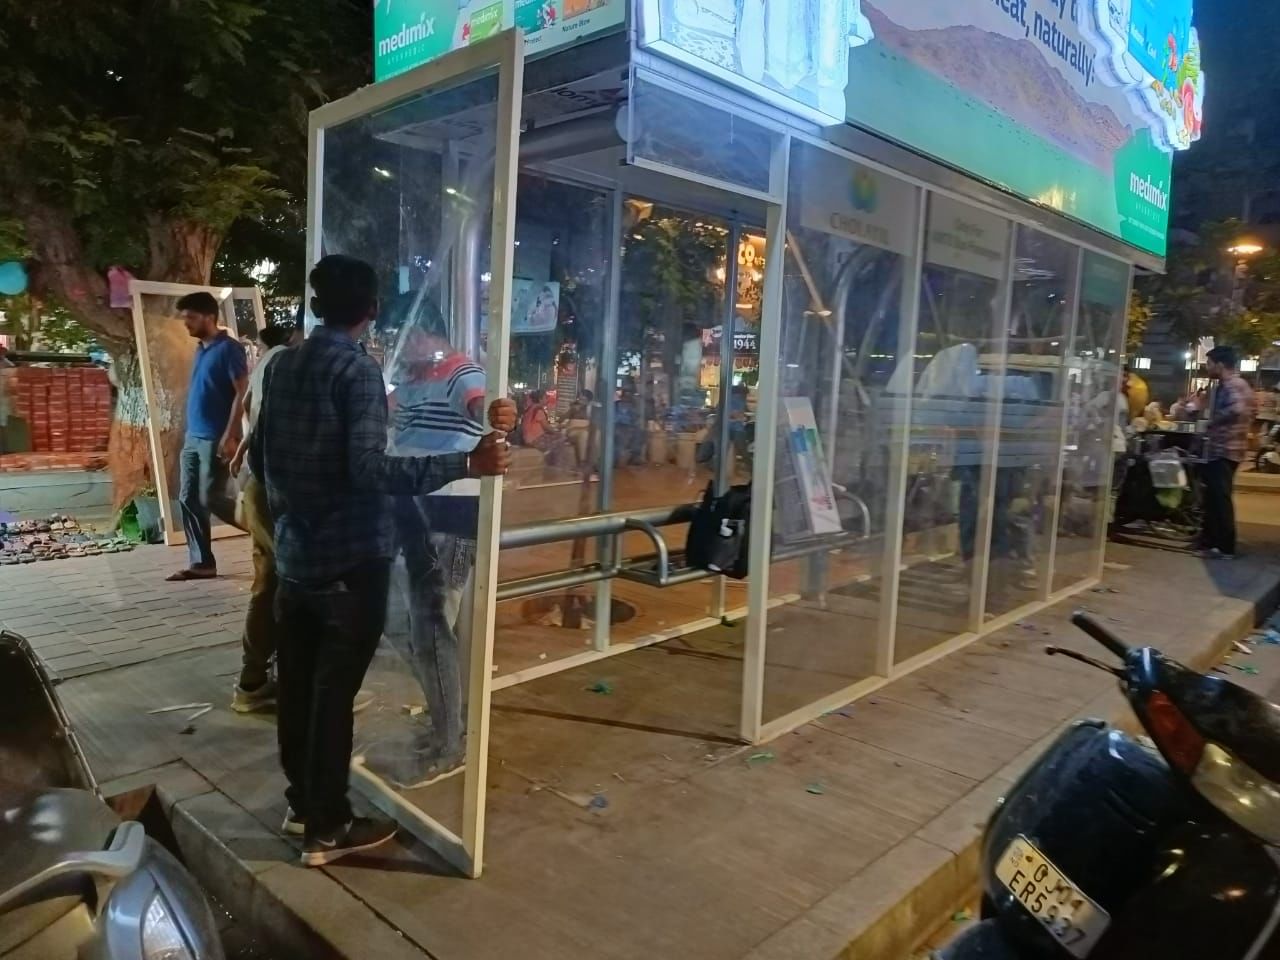 Ahmedabad: AMTSના મુસાફરોને AC વાળુ બસ સ્ટોપ તો મળ્યુ, પણ પછી શું થયુ જાણો